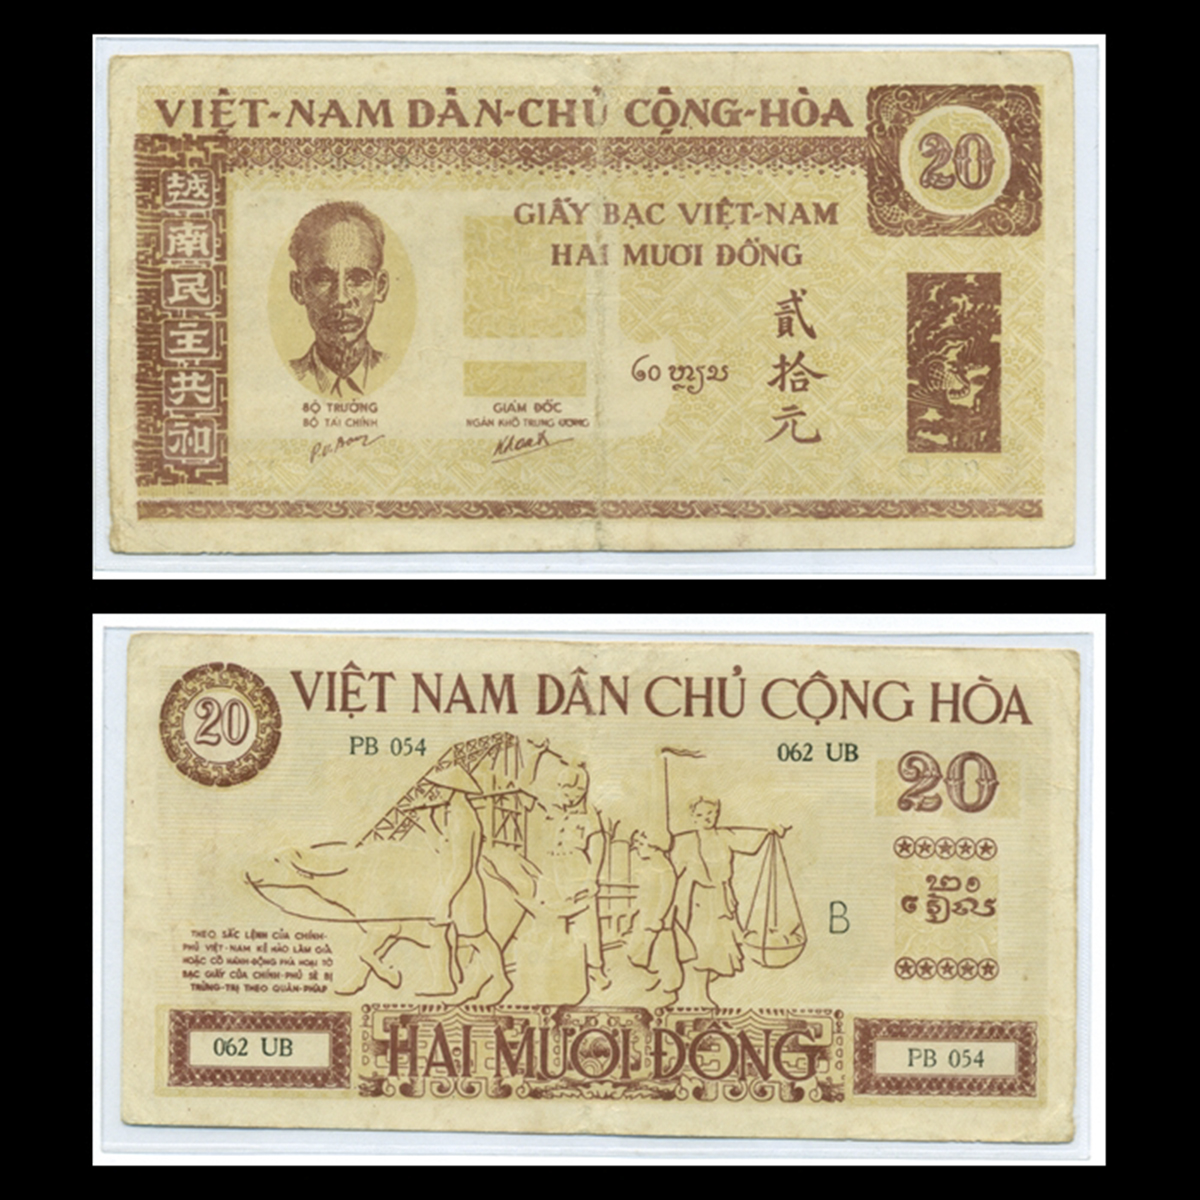 20 đồng 1946 Sĩ, nông,công, thương (Bác Hồ nhỏ) Việt Nam Dân Chủ Cộng Hòa